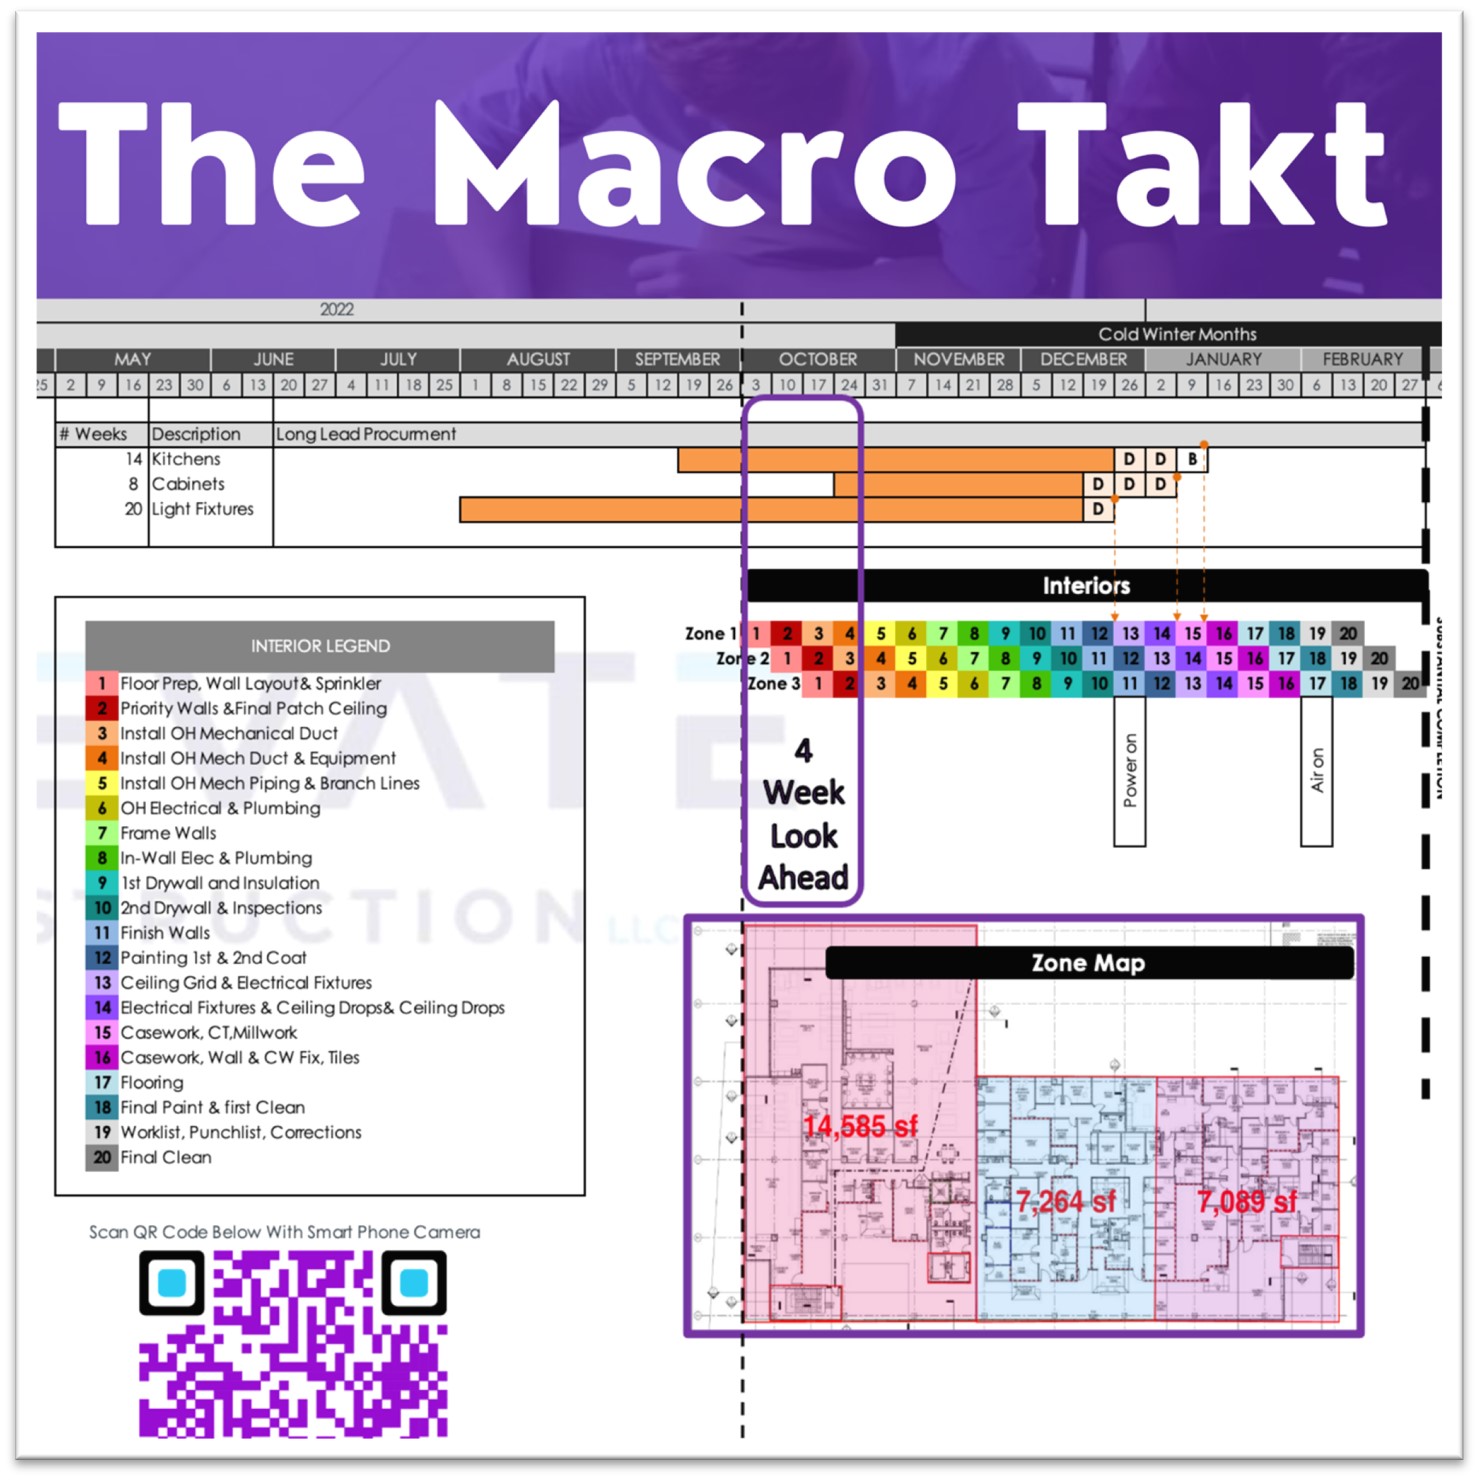 Image showing macro-level Takt plan.